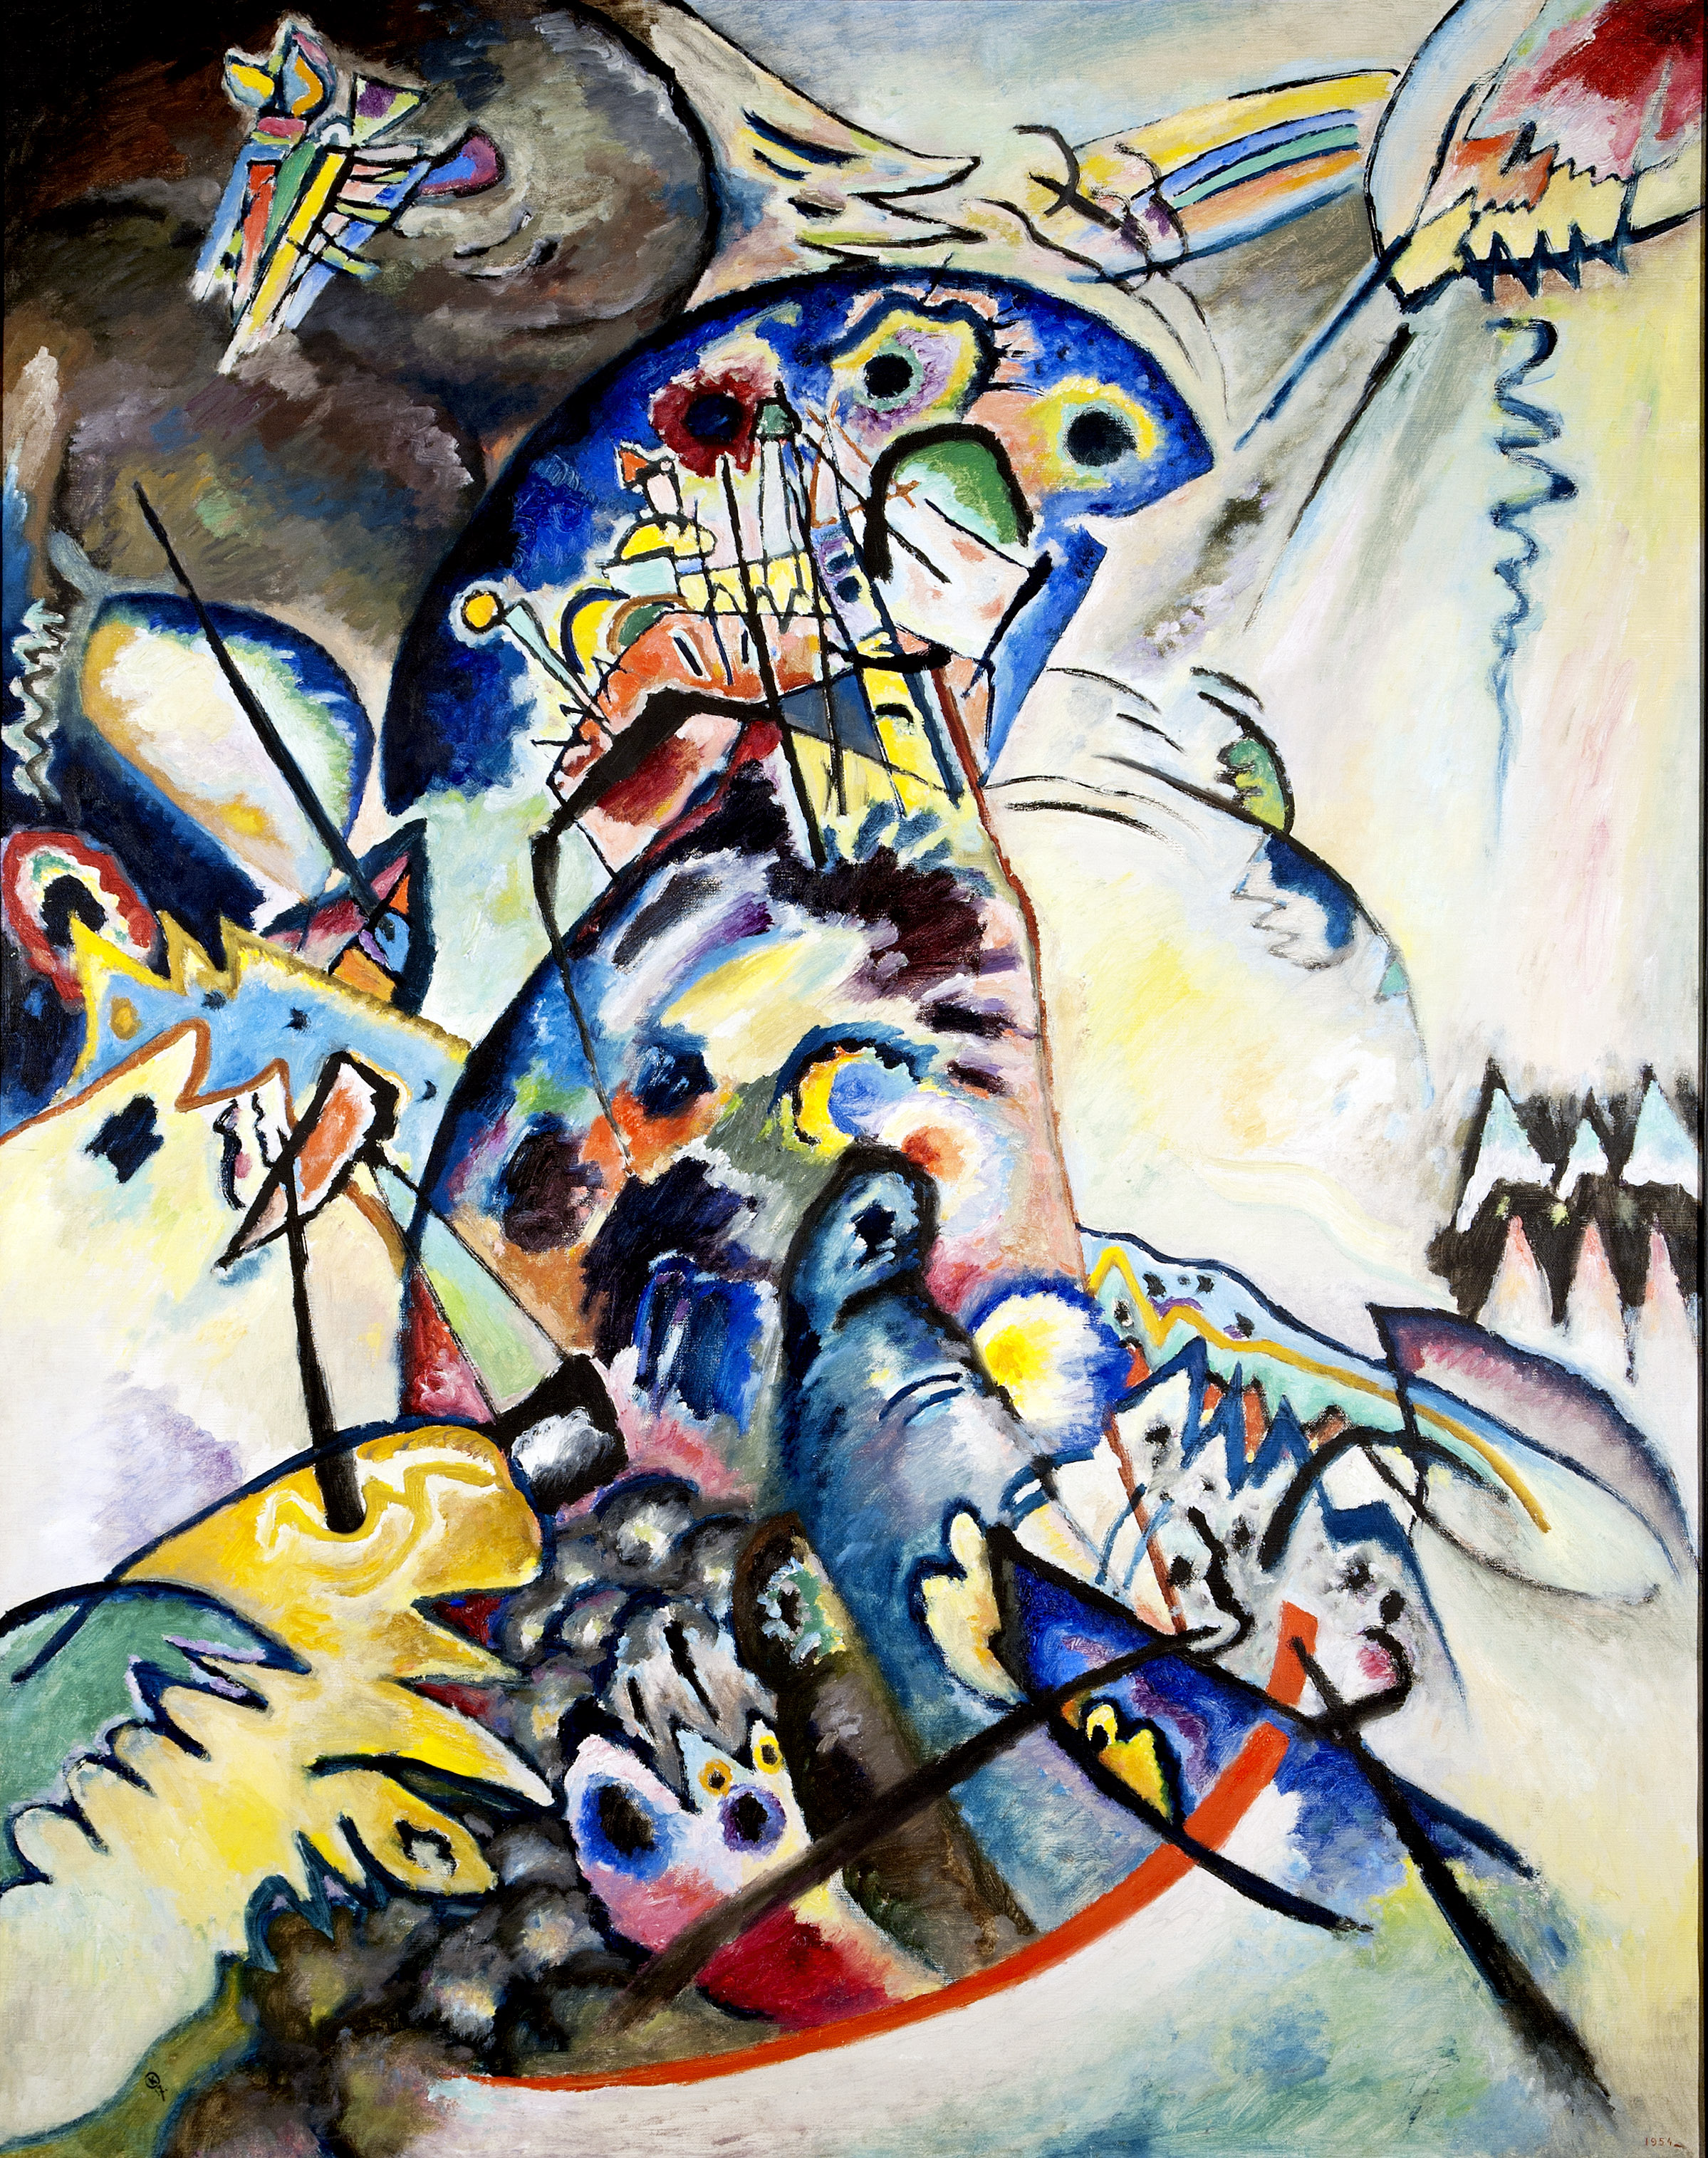 بلو كريست by Wassily Kandinsky - 1917م - 133 x 104 cm 